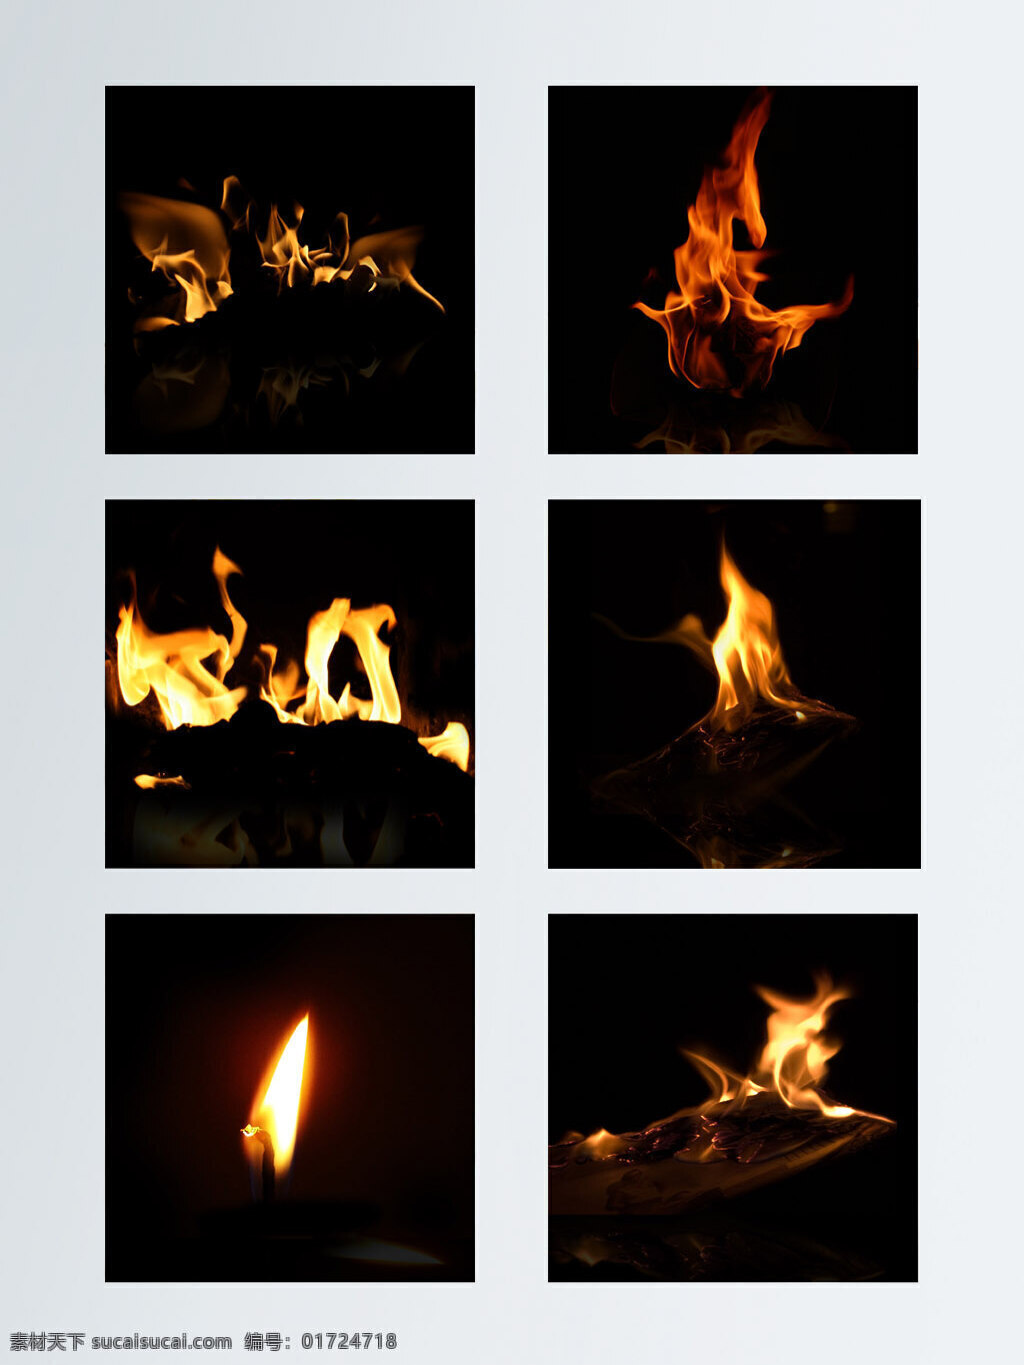 燃烧 火焰 效果 元素 图案 红色 火苗 火焰素材 火焰特效 酷炫 熊熊大火